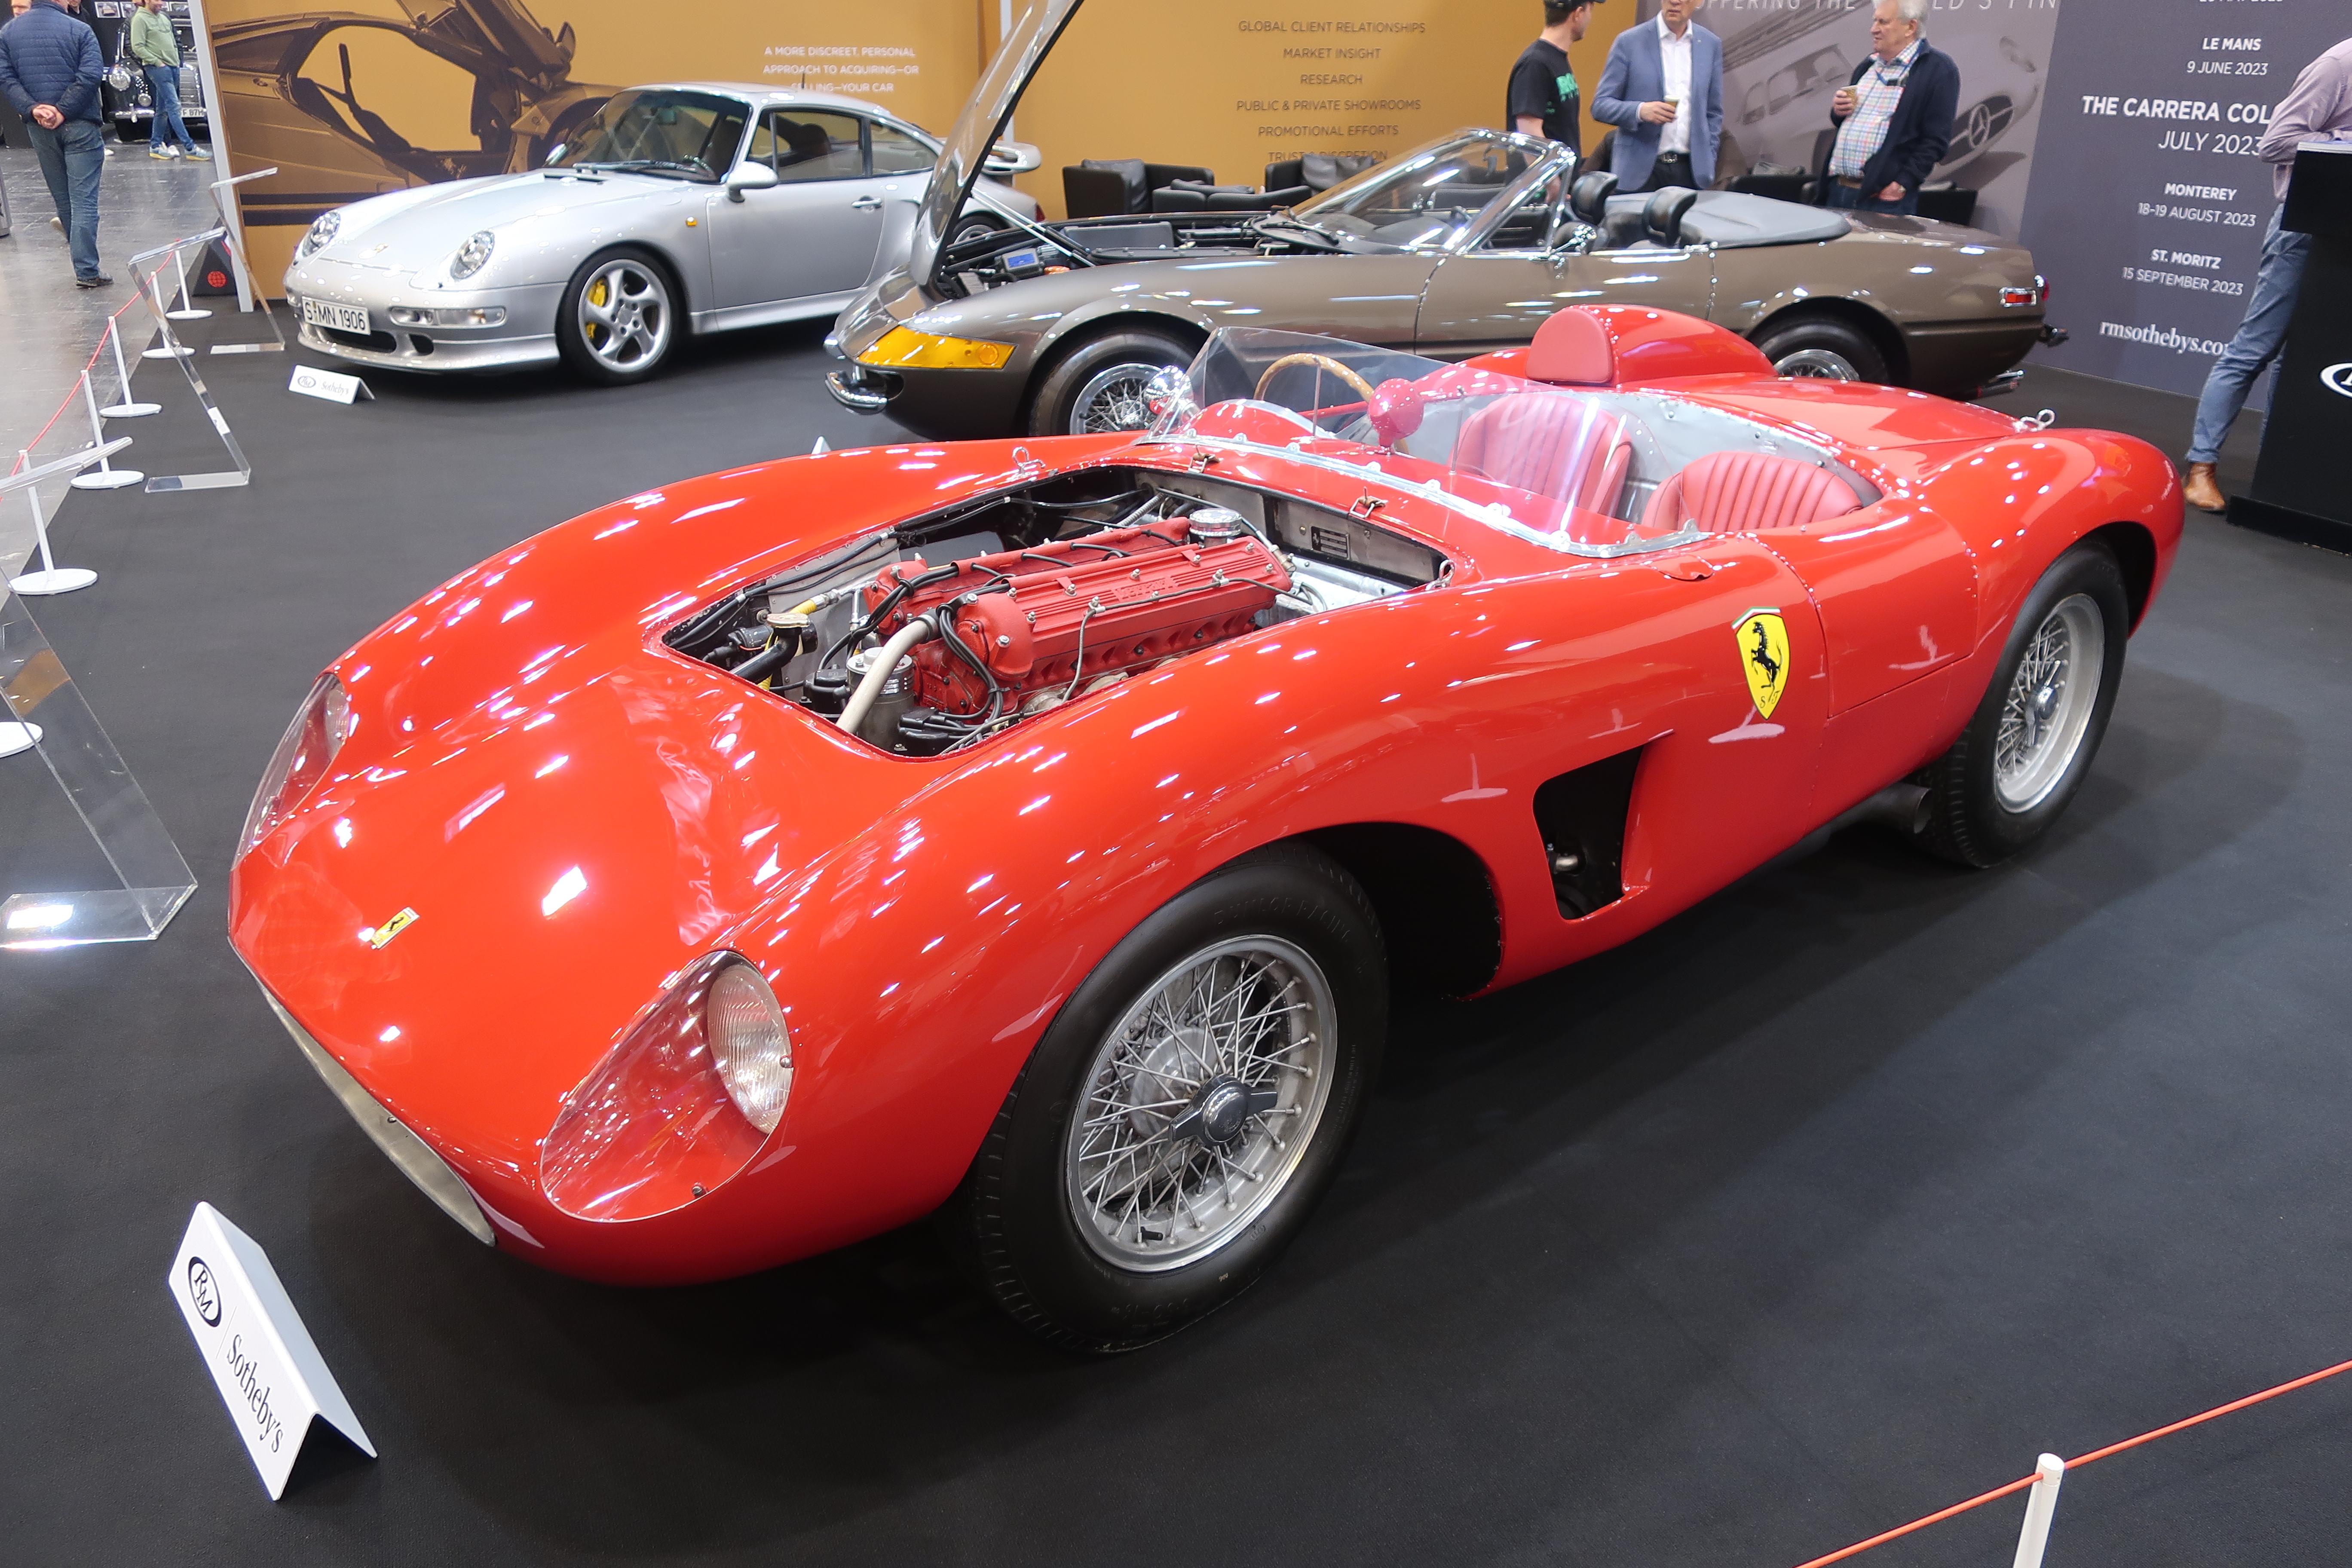 Fantastisk 1956 Ferrari Testa Rossa Spider som skal selges av RM Sotheby’s på Villa d’Este i mai. Bilen er en av mange biler fra en stor svensk samling, og antatt auksjonspris er 4 til 4,5 millione